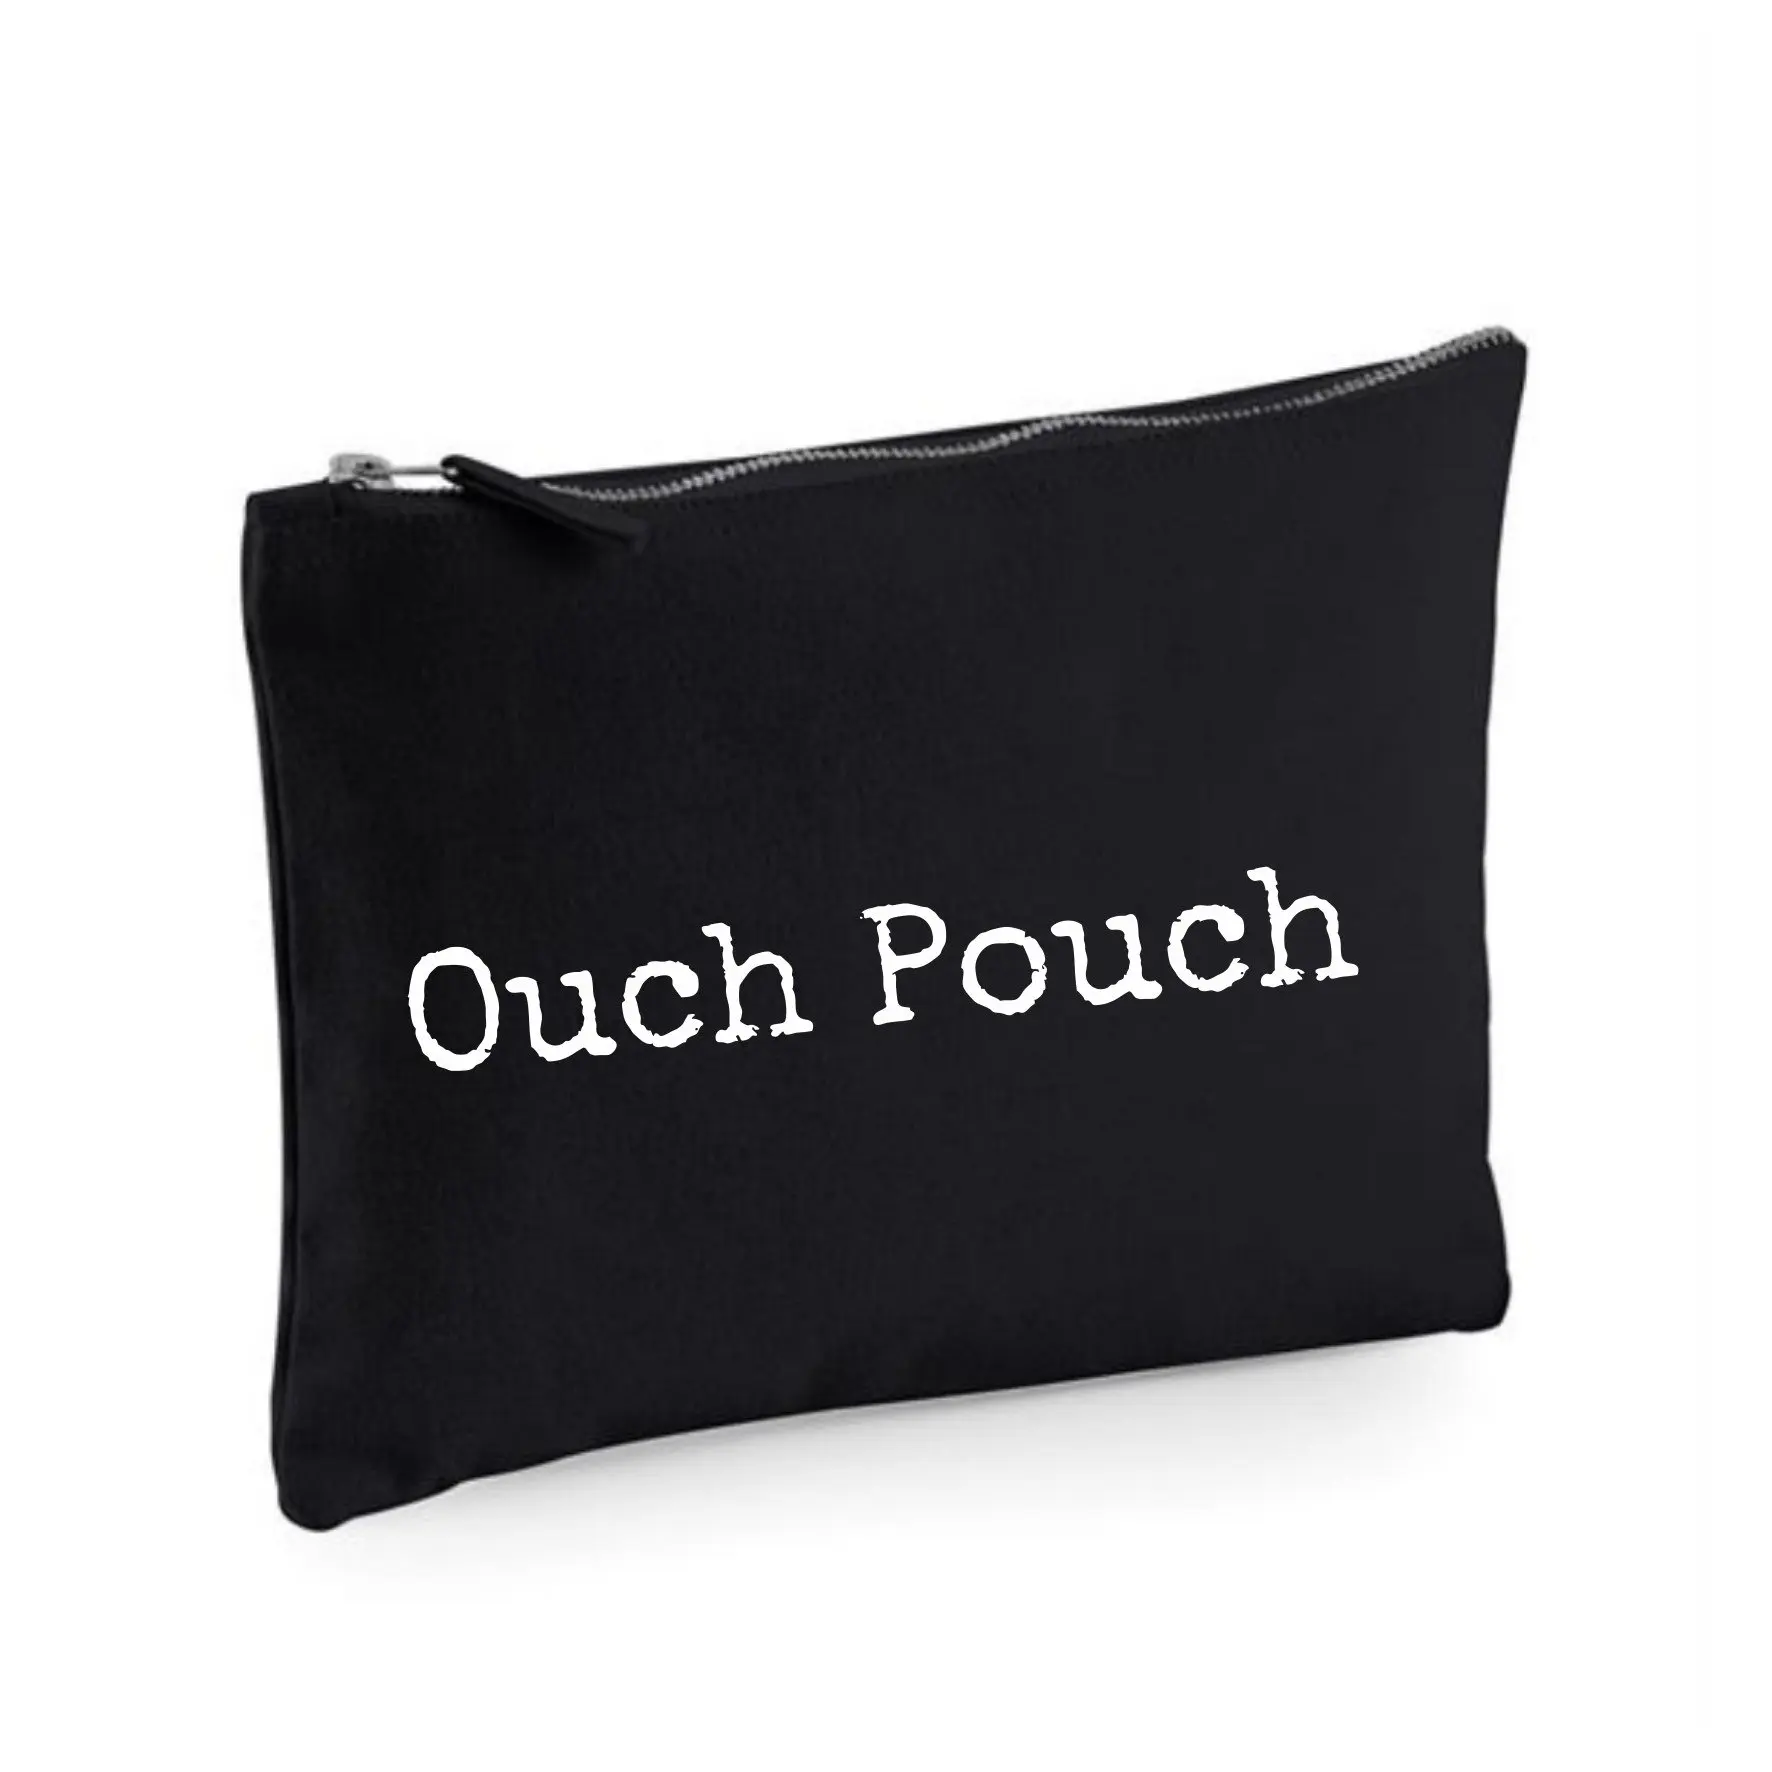 Niestandardowy projekt dodaj swoją nazwę firma Logo kosmetyczny organizator do torby portfel piórnik prezent stylowy spersonalizowany kosmetyczny torba na suwak